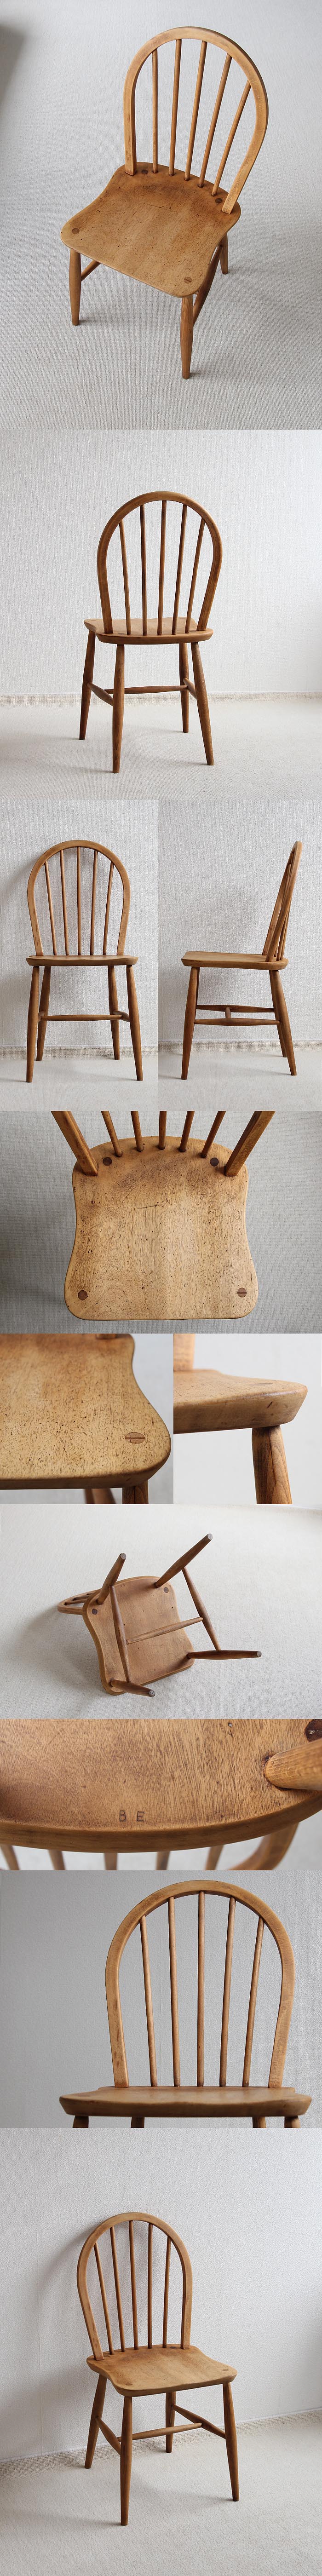 イギリス ヴィンテージ アーコールチェア ERCOL 木製椅子 アンティーク 家具 「フープバックチェア」V-717